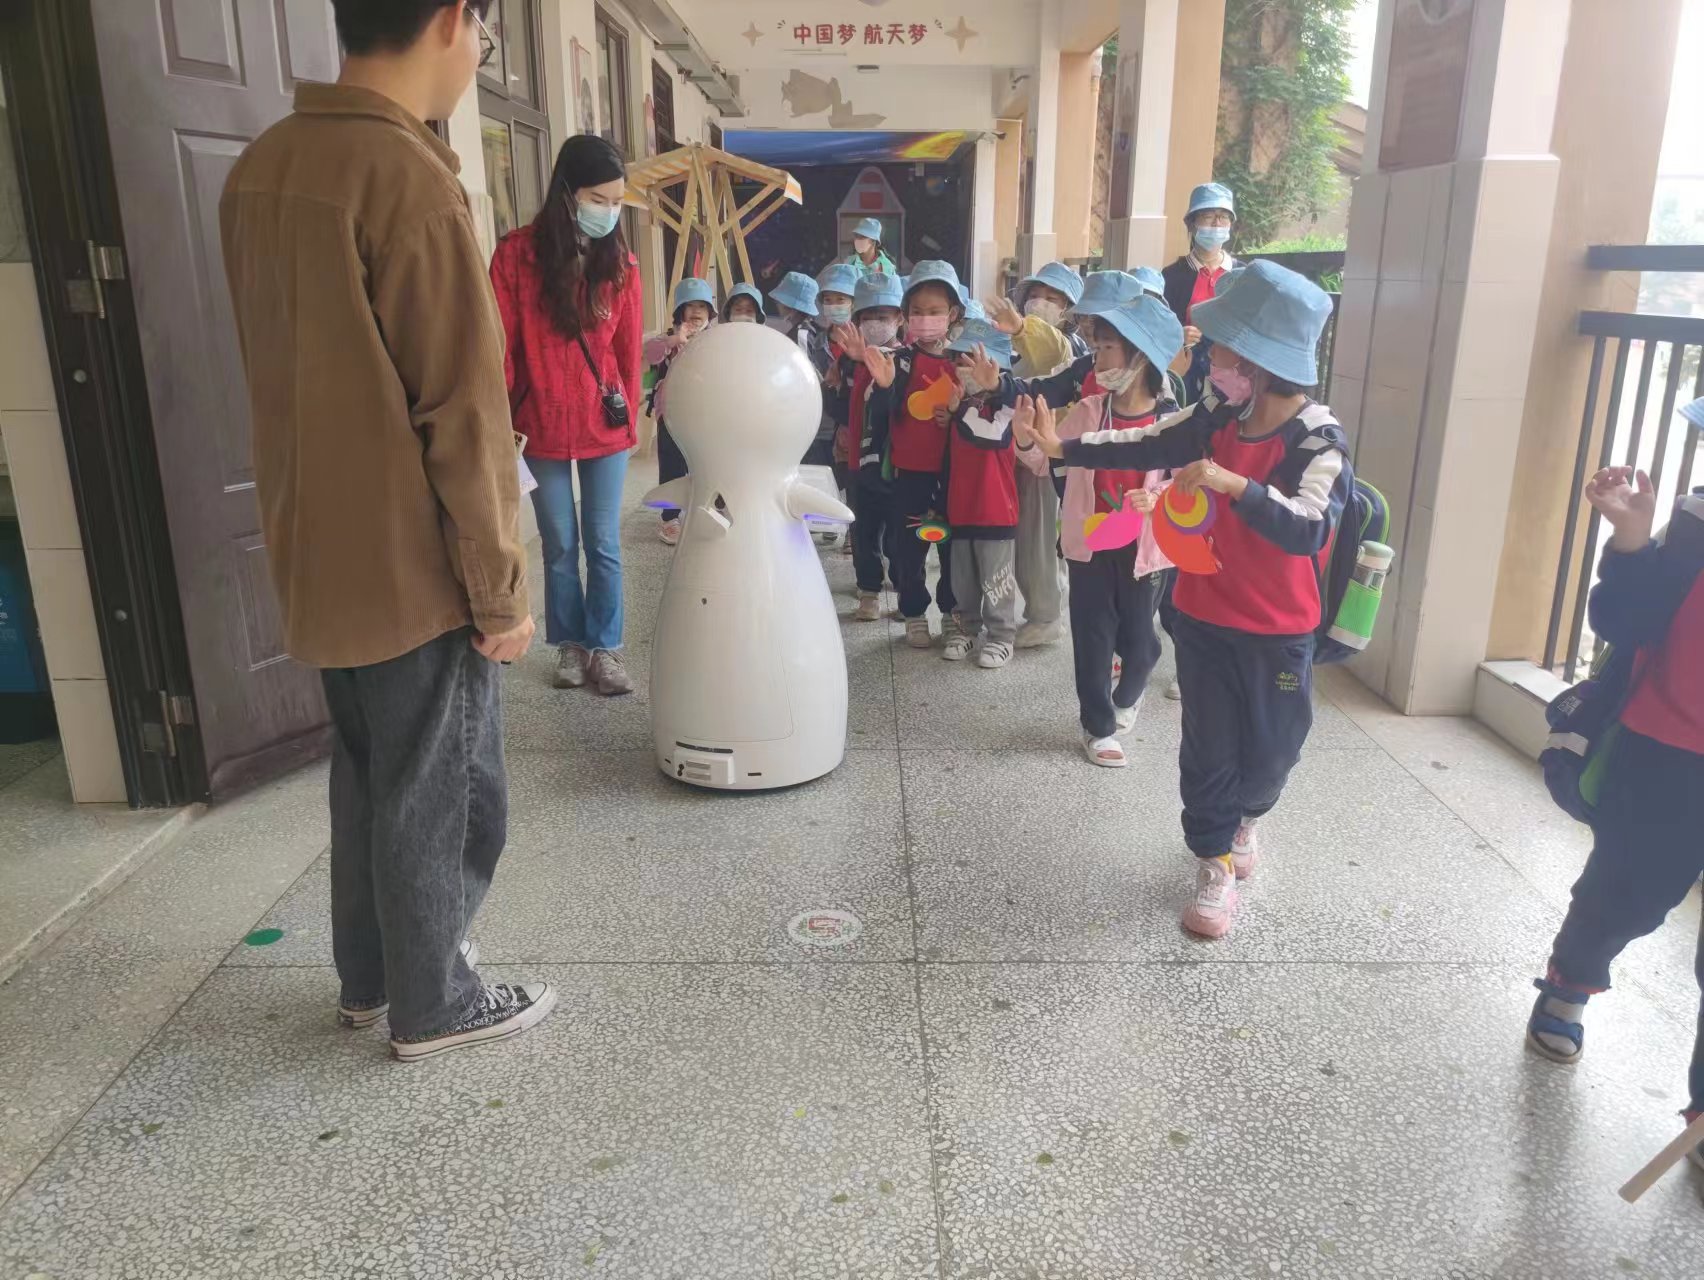 روبوت الثلج، المستشار الجديد لمدرسة تشينغيوان تشونغشين الابتدائية ~